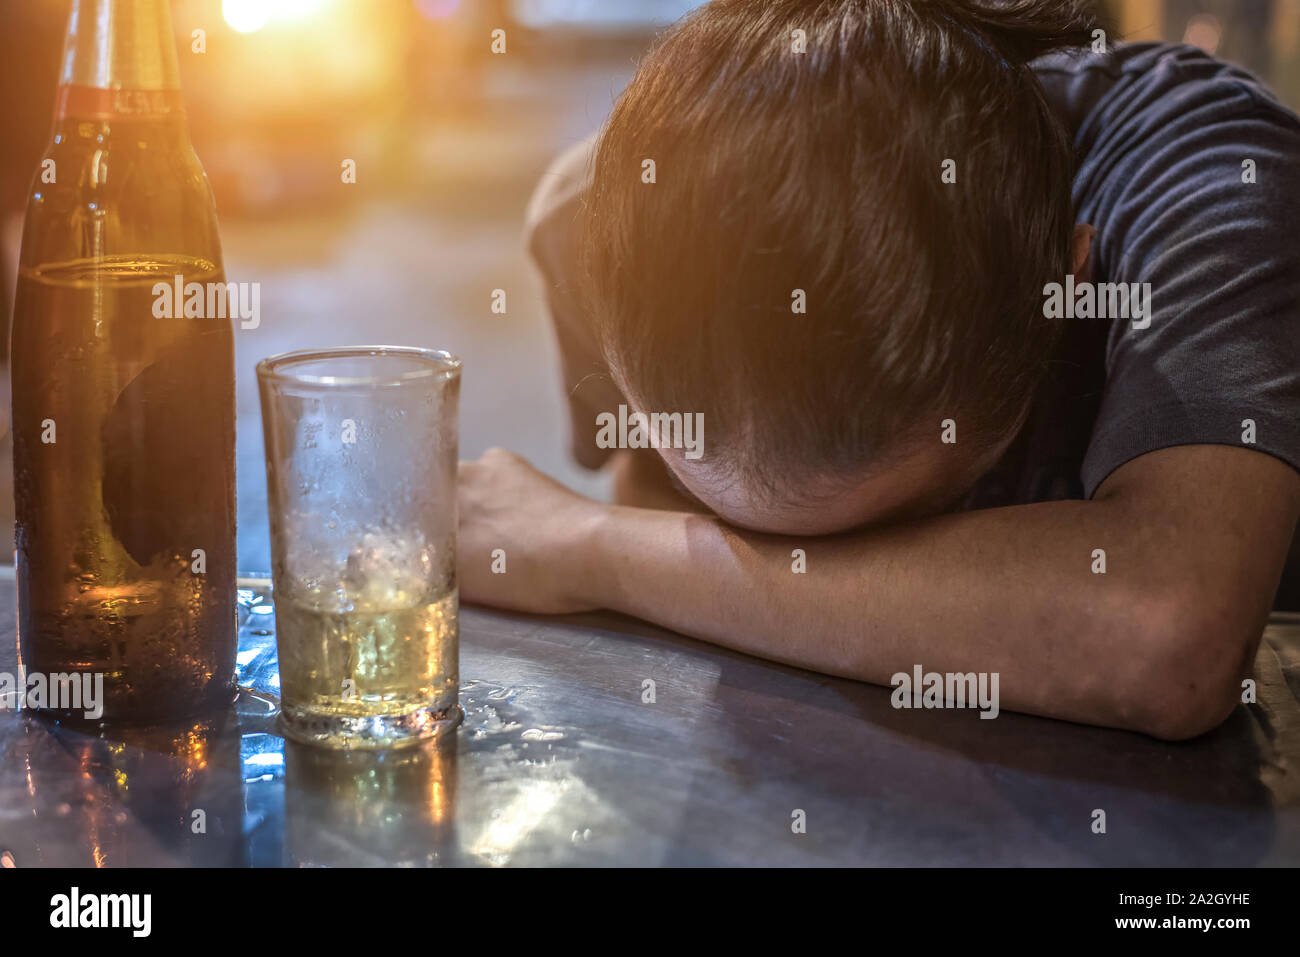 Drunk Man Sleeping At Bar Counter Stock Photo